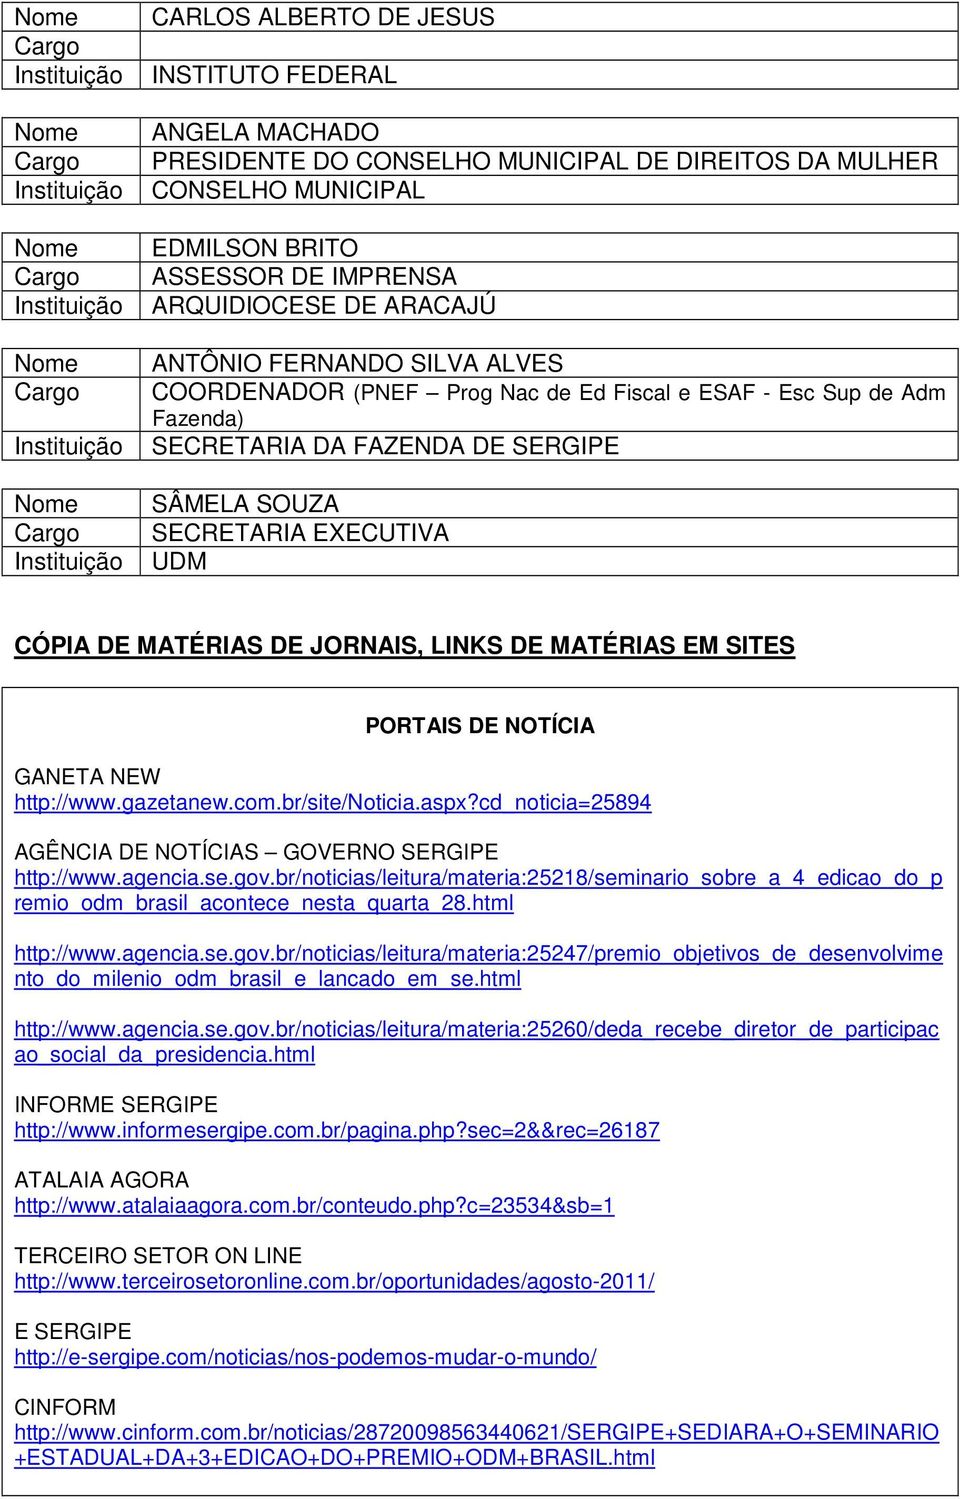 LINKS DE MATÉRIAS EM SITES PORTAIS DE NOTÍCIA GANETA NEW http://www.gazetanew.com.br/site/noticia.aspx?cd_noticia=25894 AGÊNCIA DE NOTÍCIAS GOVERNO SERGIPE http://www.agencia.se.gov.